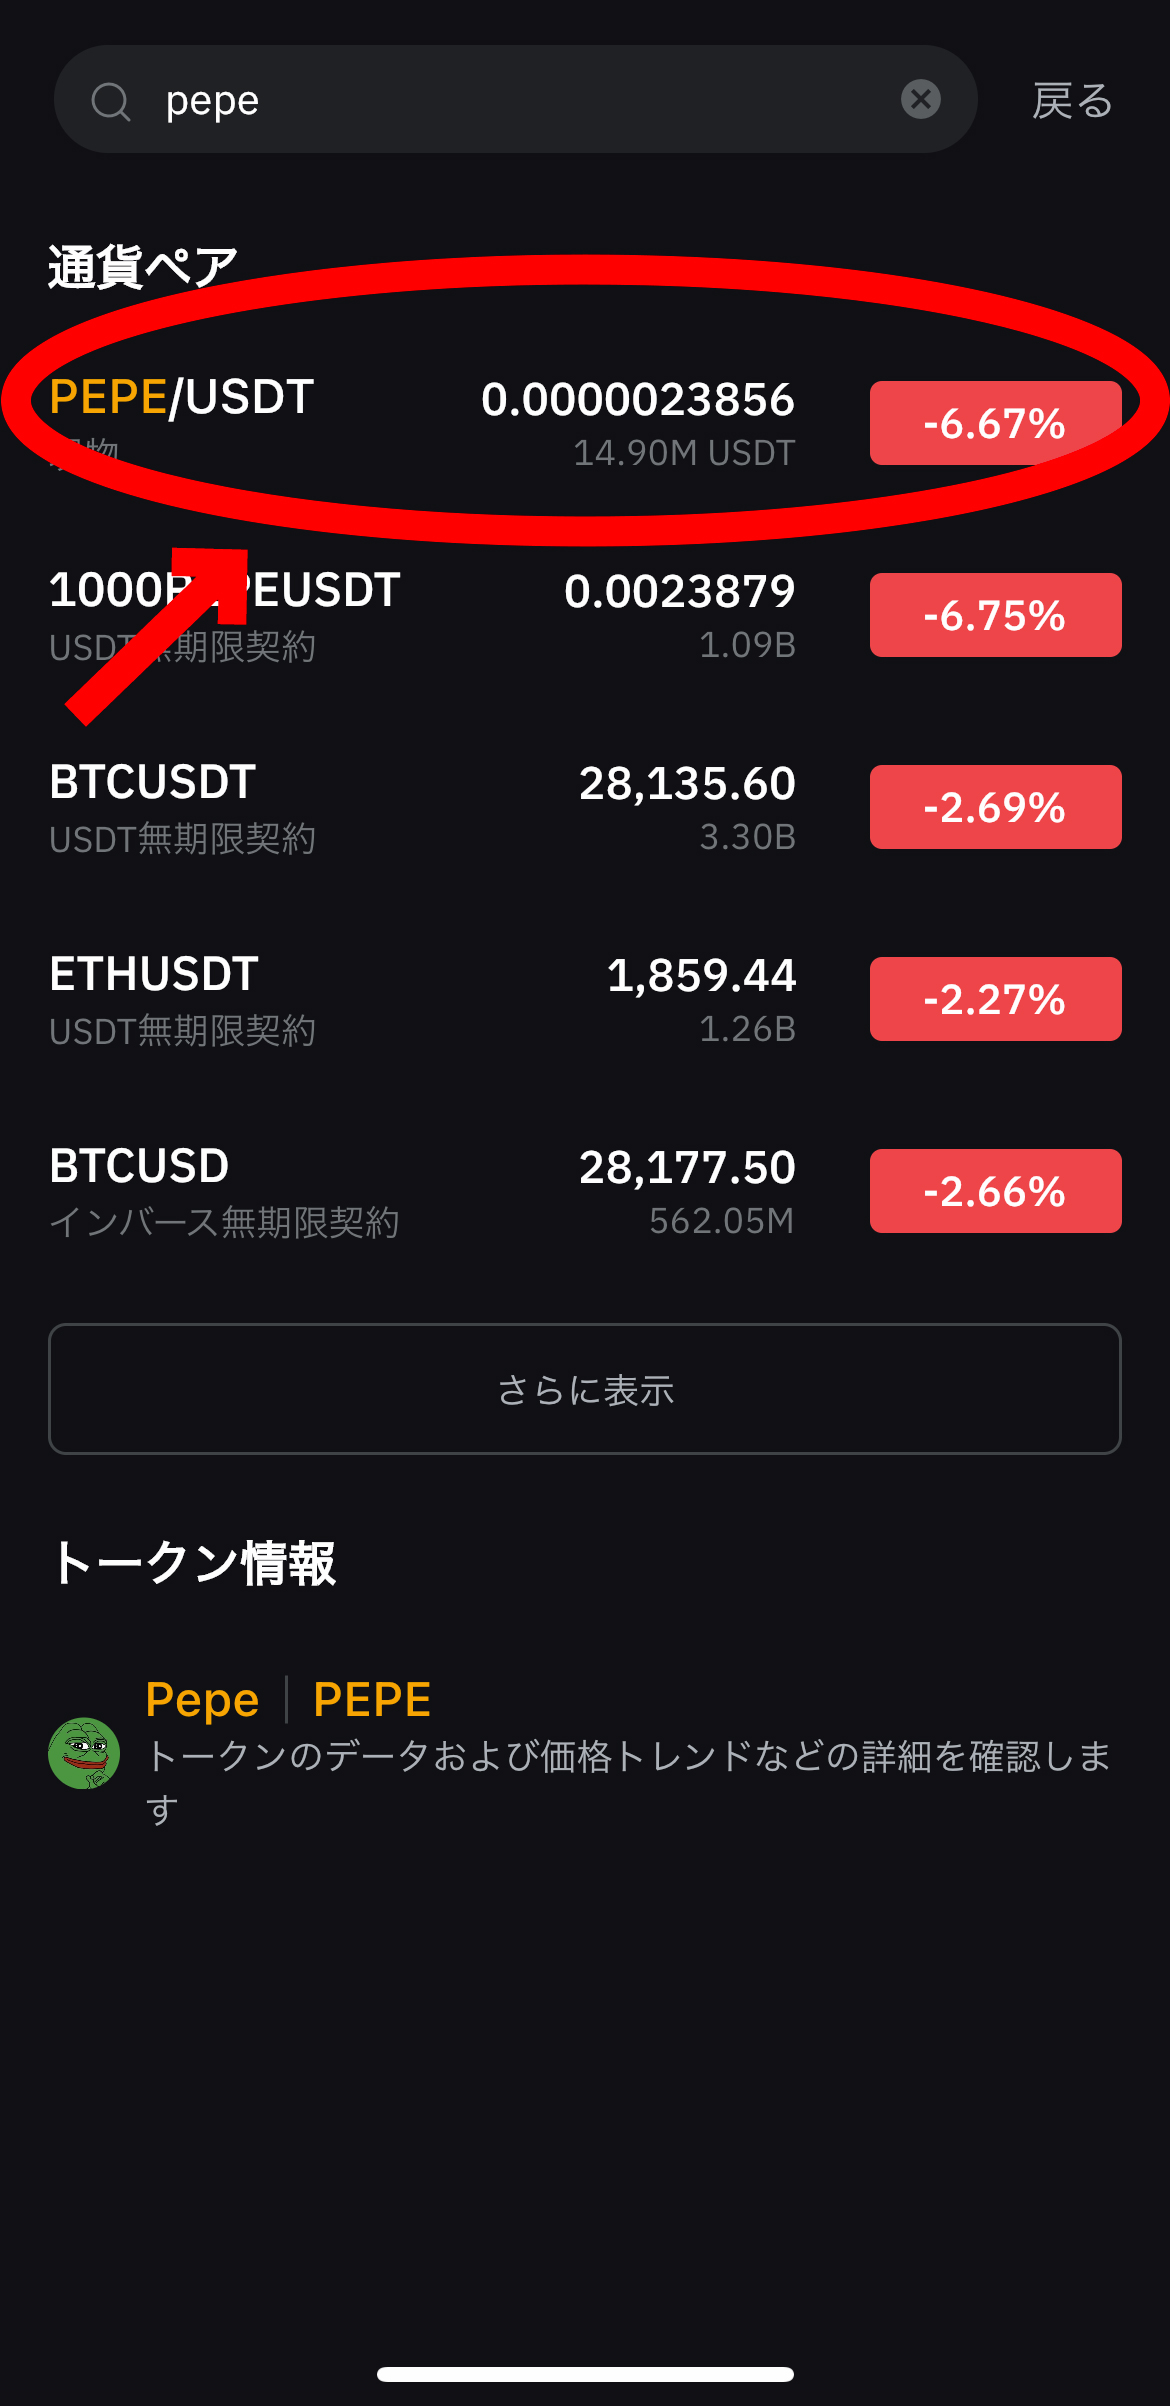 仮想通貨 ペペコイン（pepe）の買い方【バイビット】【コインチェック】【スマホで簡単】【初心者向け】PEPE/USDTを選択します